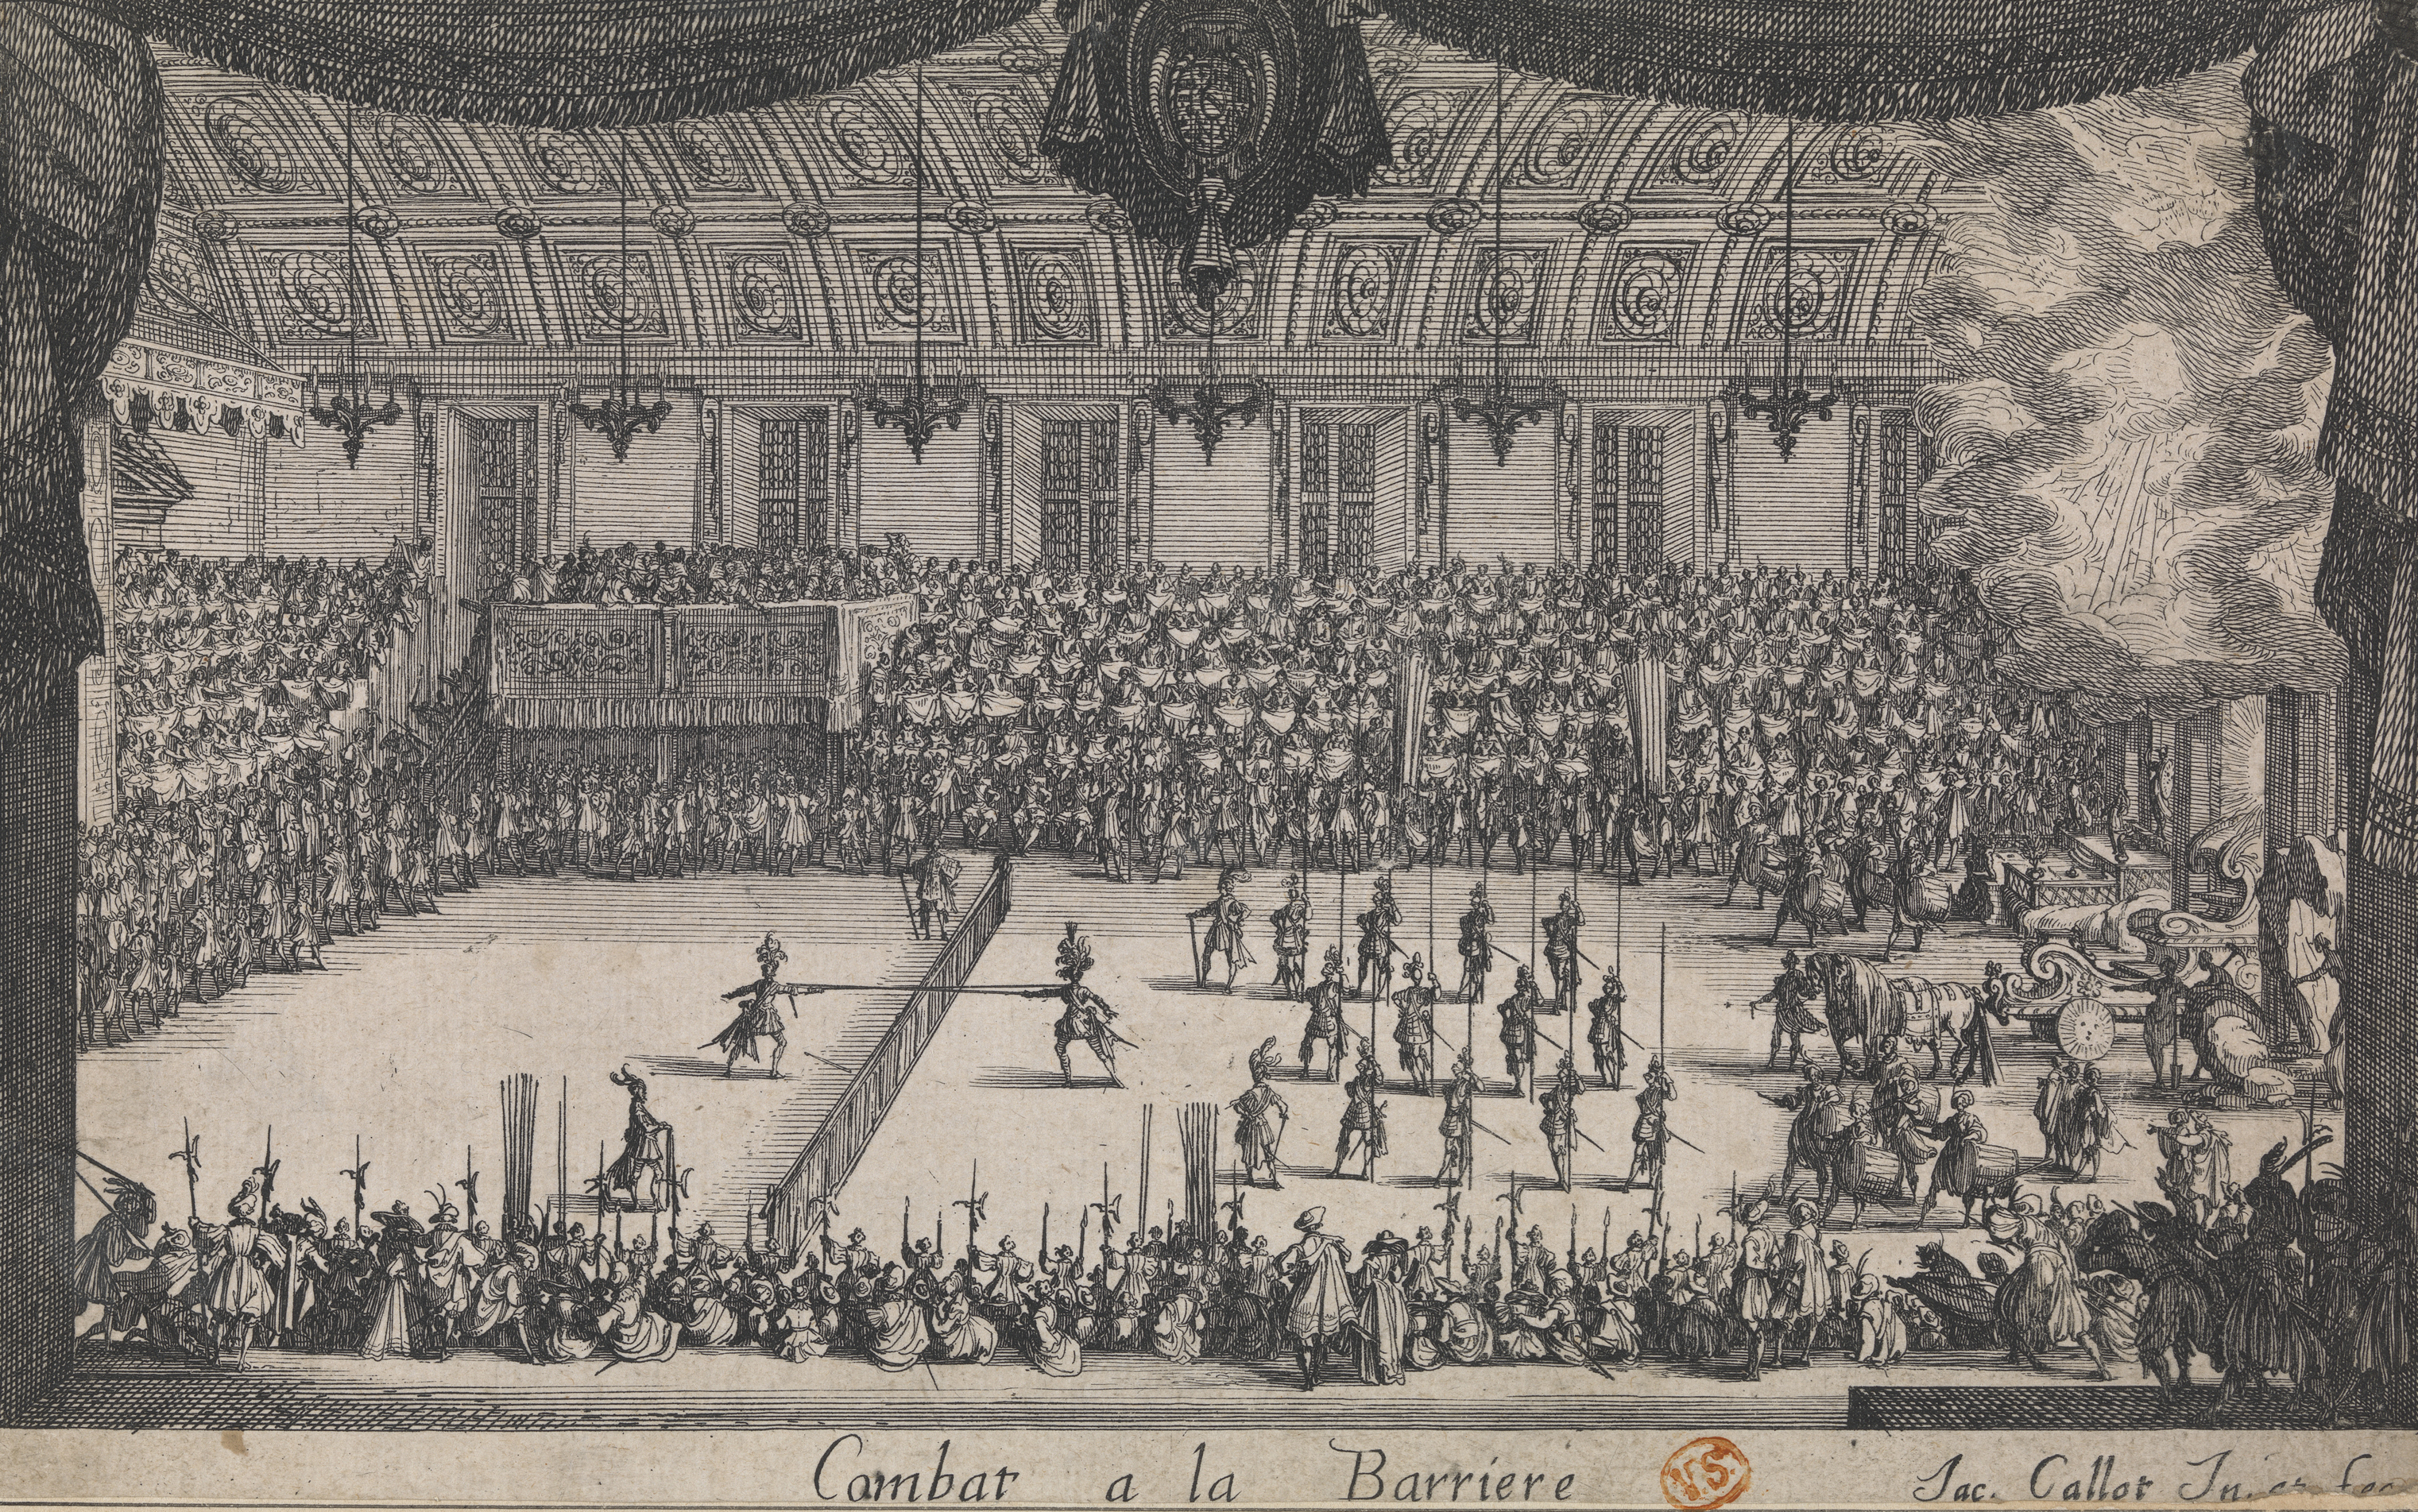 Jacques Callot, Het toernooi in de Feestzaal, Combat à la Barrière, 1627, Musea Brugge, 146 mm x 236 mm, inv. 0000.GRO6236.III, CC0, image artinflanders.be